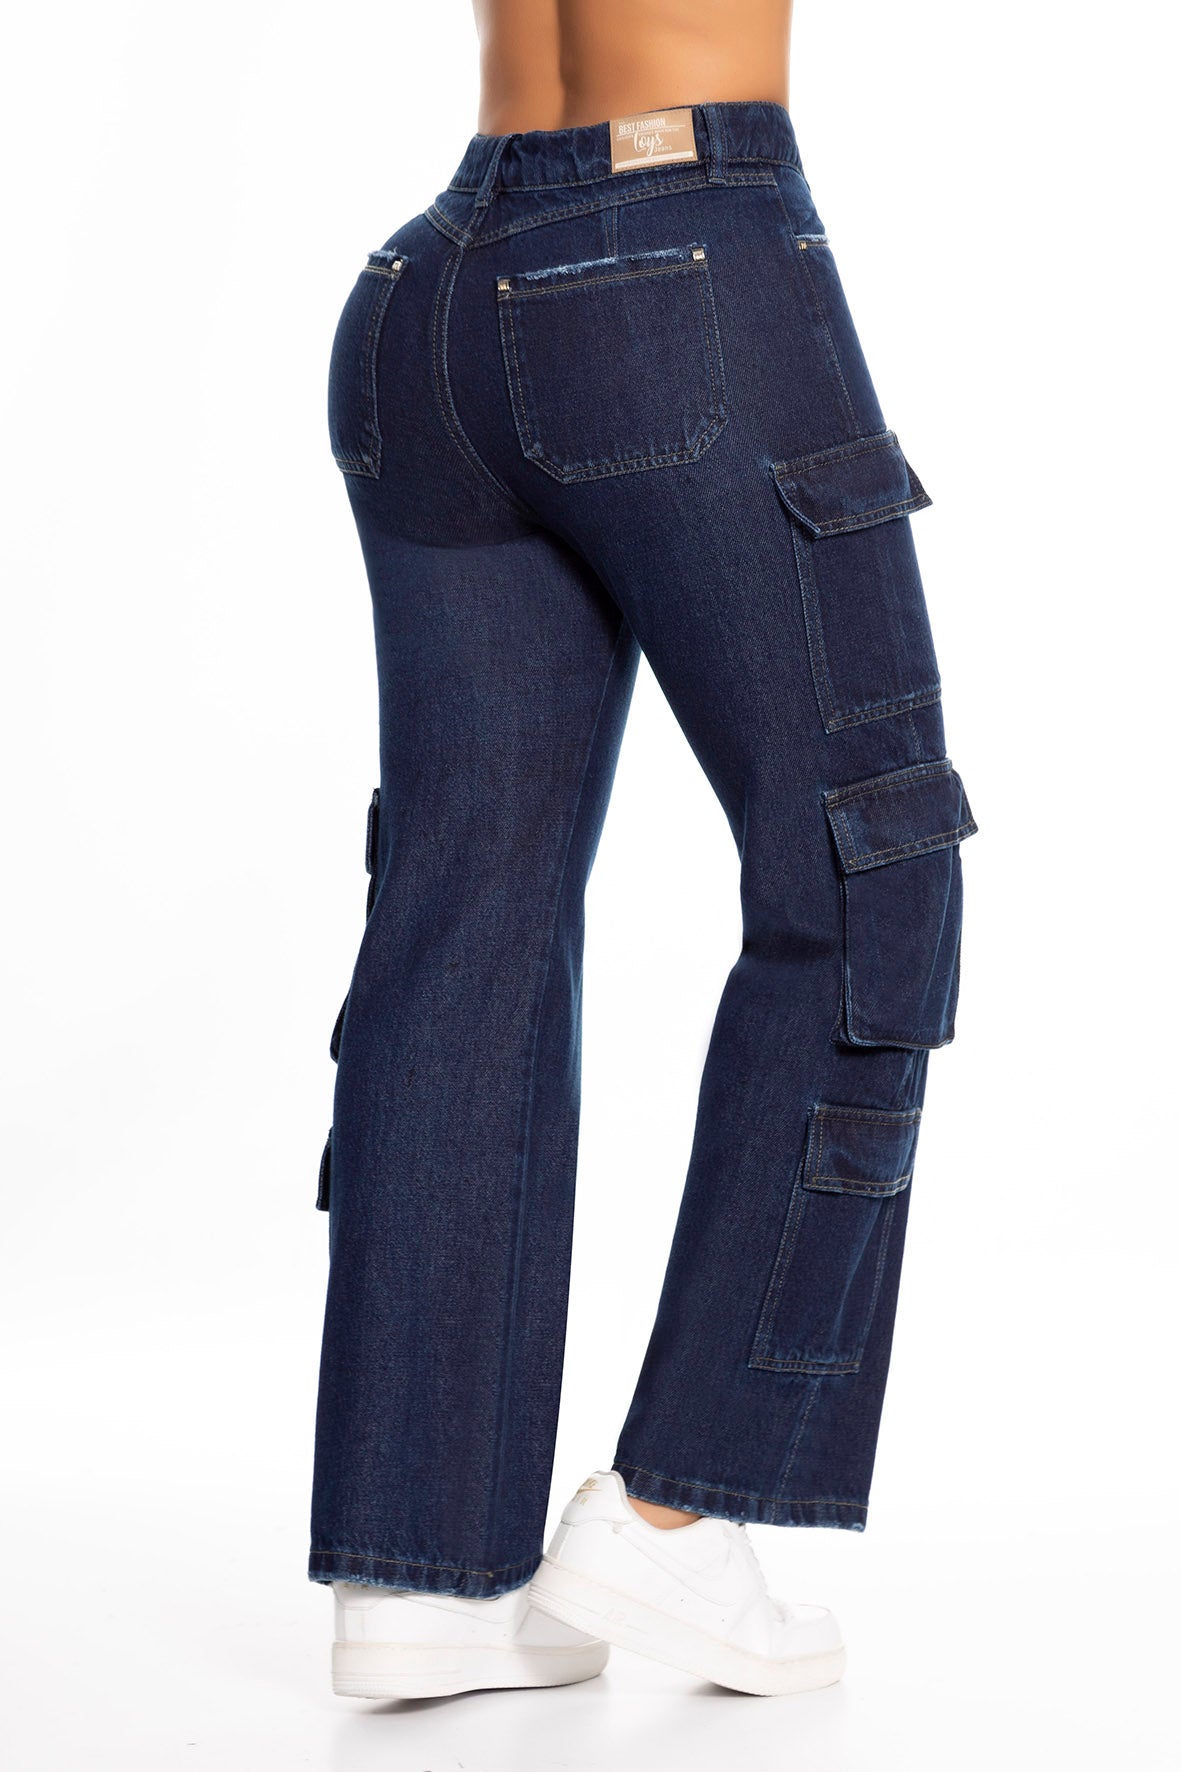 Ref. 10048 Jeans cargo rígido, tiro alto, bolsillos laterales, tono azul oscuro